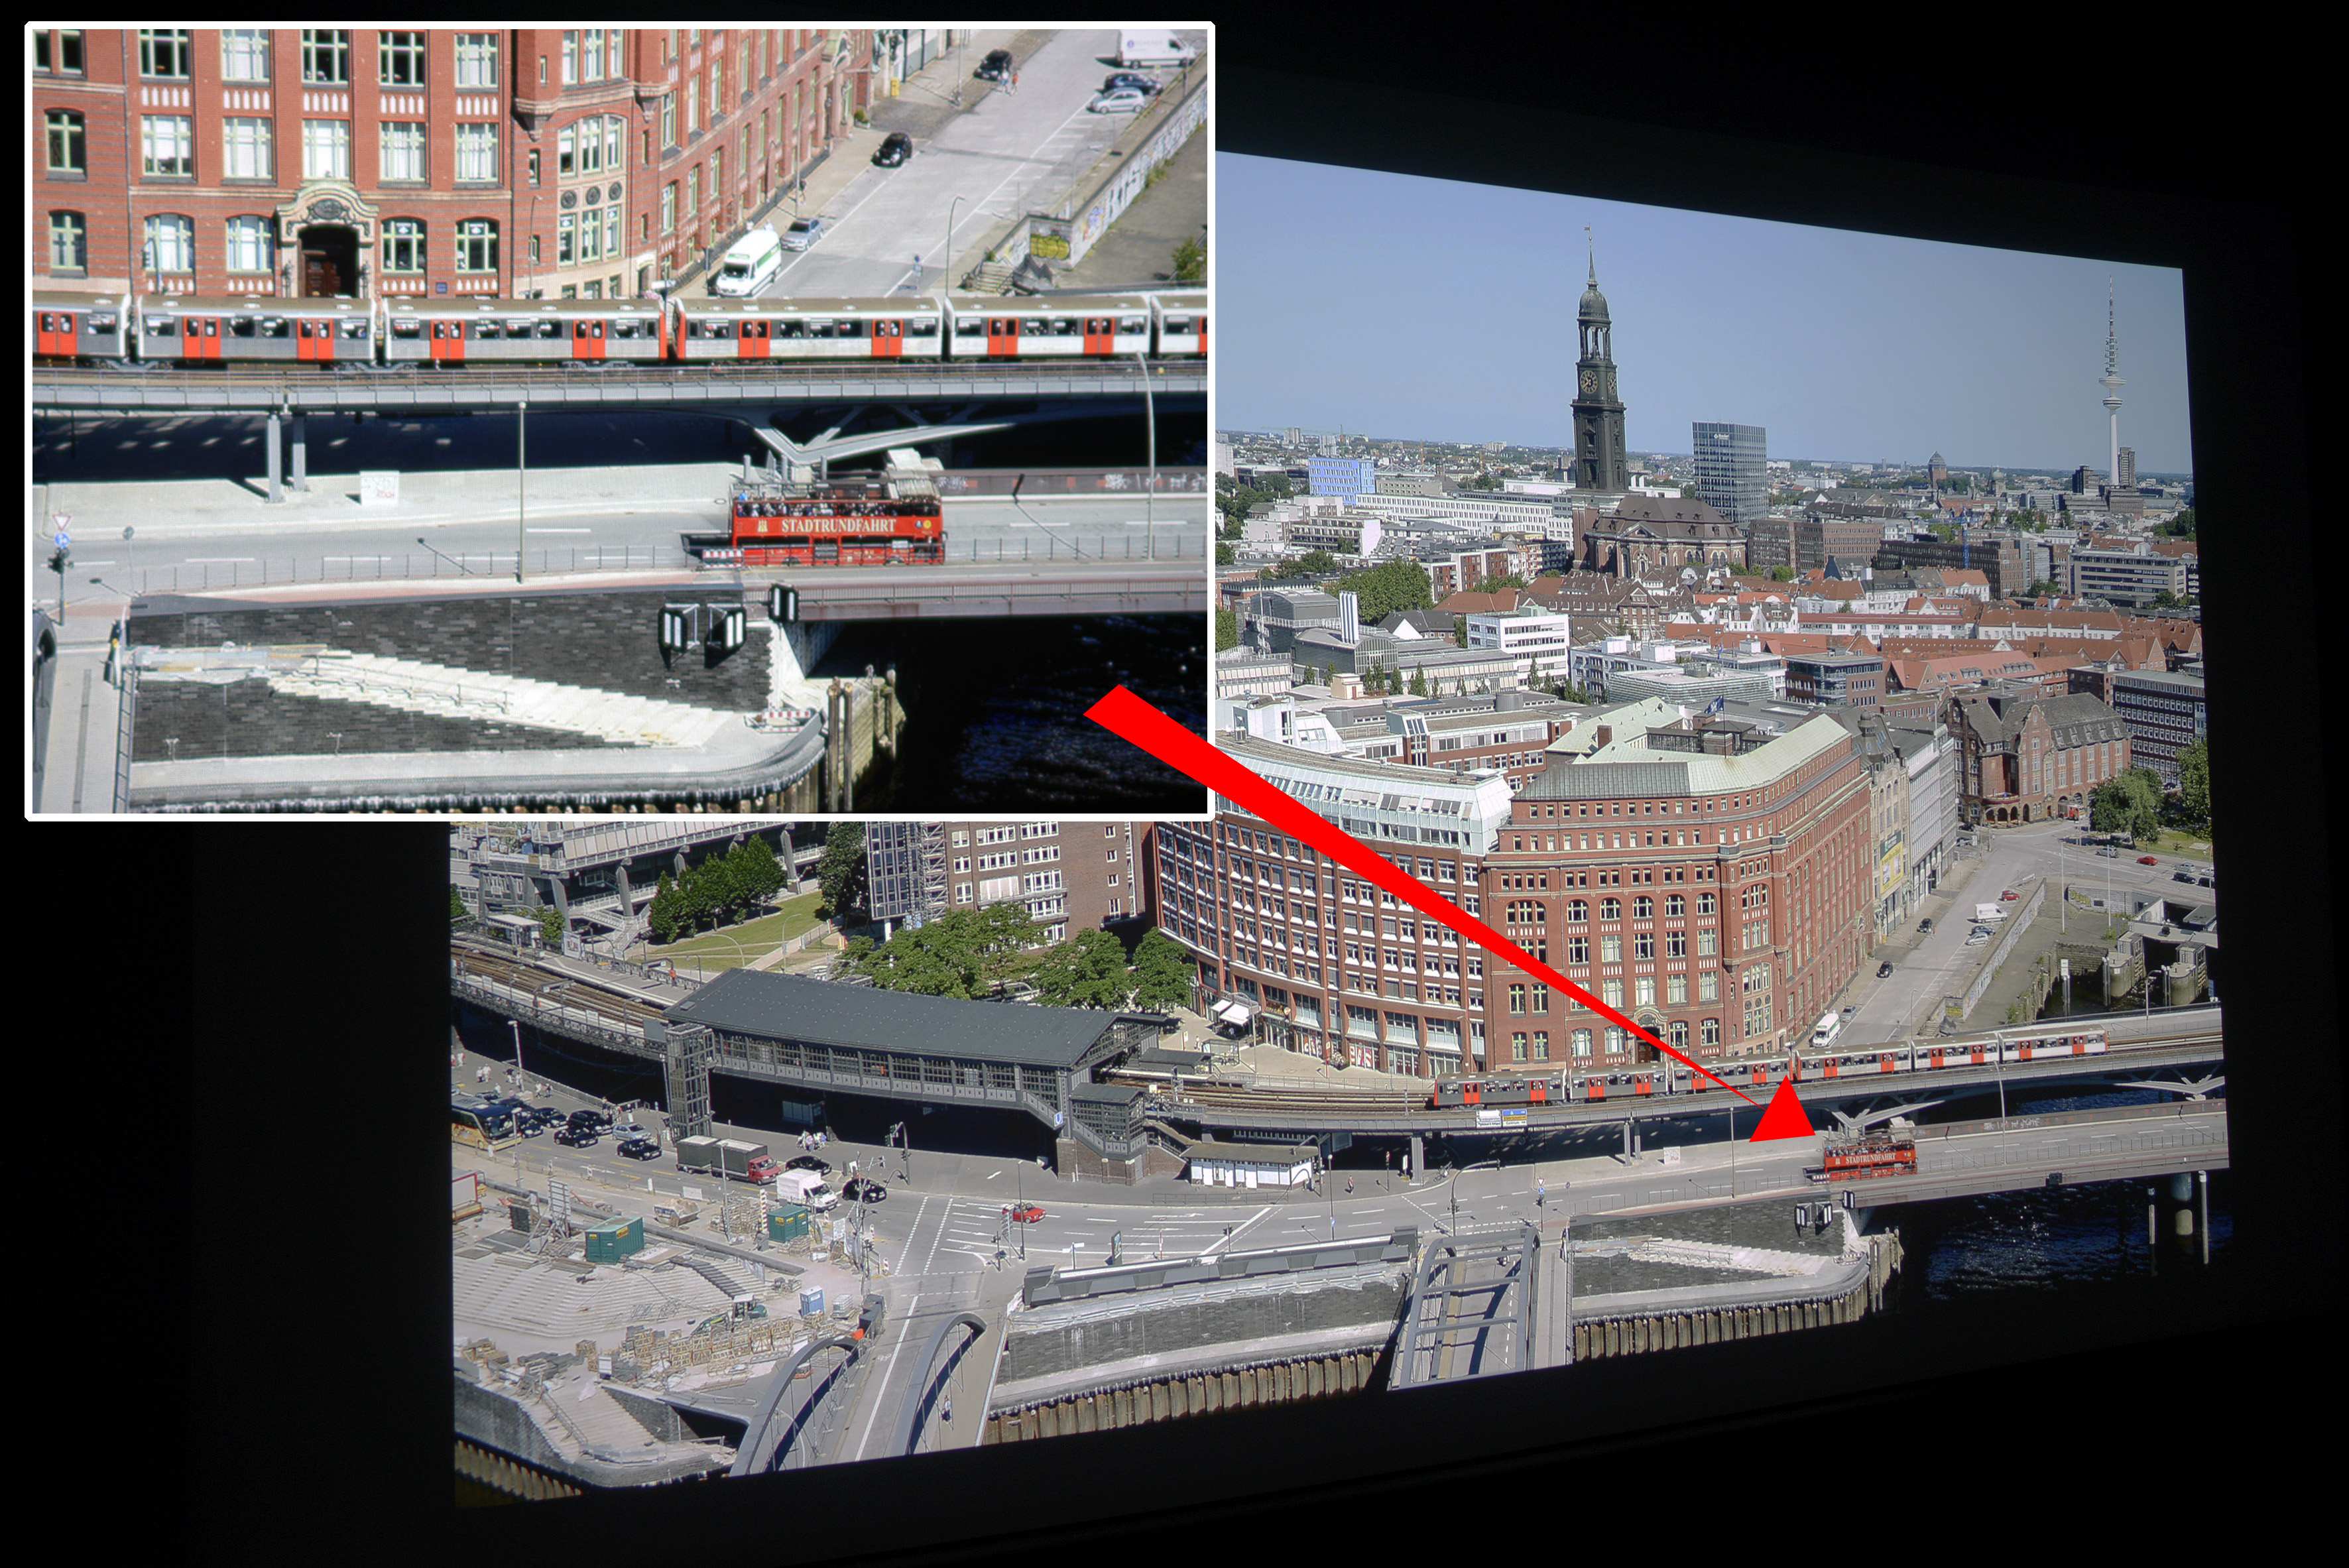 Foto: Michael B. Rehders Das Hamburg Panorama habe ich aus der 21. Etage des Hanseatic Trade Centers geschossen. Auf dem Foto werden die Farben originalgetreu reproduziert. Der leichte Blauverlauf im Himmel gelingt dem W1700 übergangslos mit allen Nuancen. In der Ausschnittsvergrößerung (oben links) wird deutlich, wie hervorragend die Schärfe dieser UHD-Auflösung projiziert wird. Der Schriftzug „STADTRUNDFAHRT“ wird vollständig auf dem roten Doppeldecke abgebildet. Der Asphalt ist farbneutral und die orangenen U-Bahntüren realistisch.